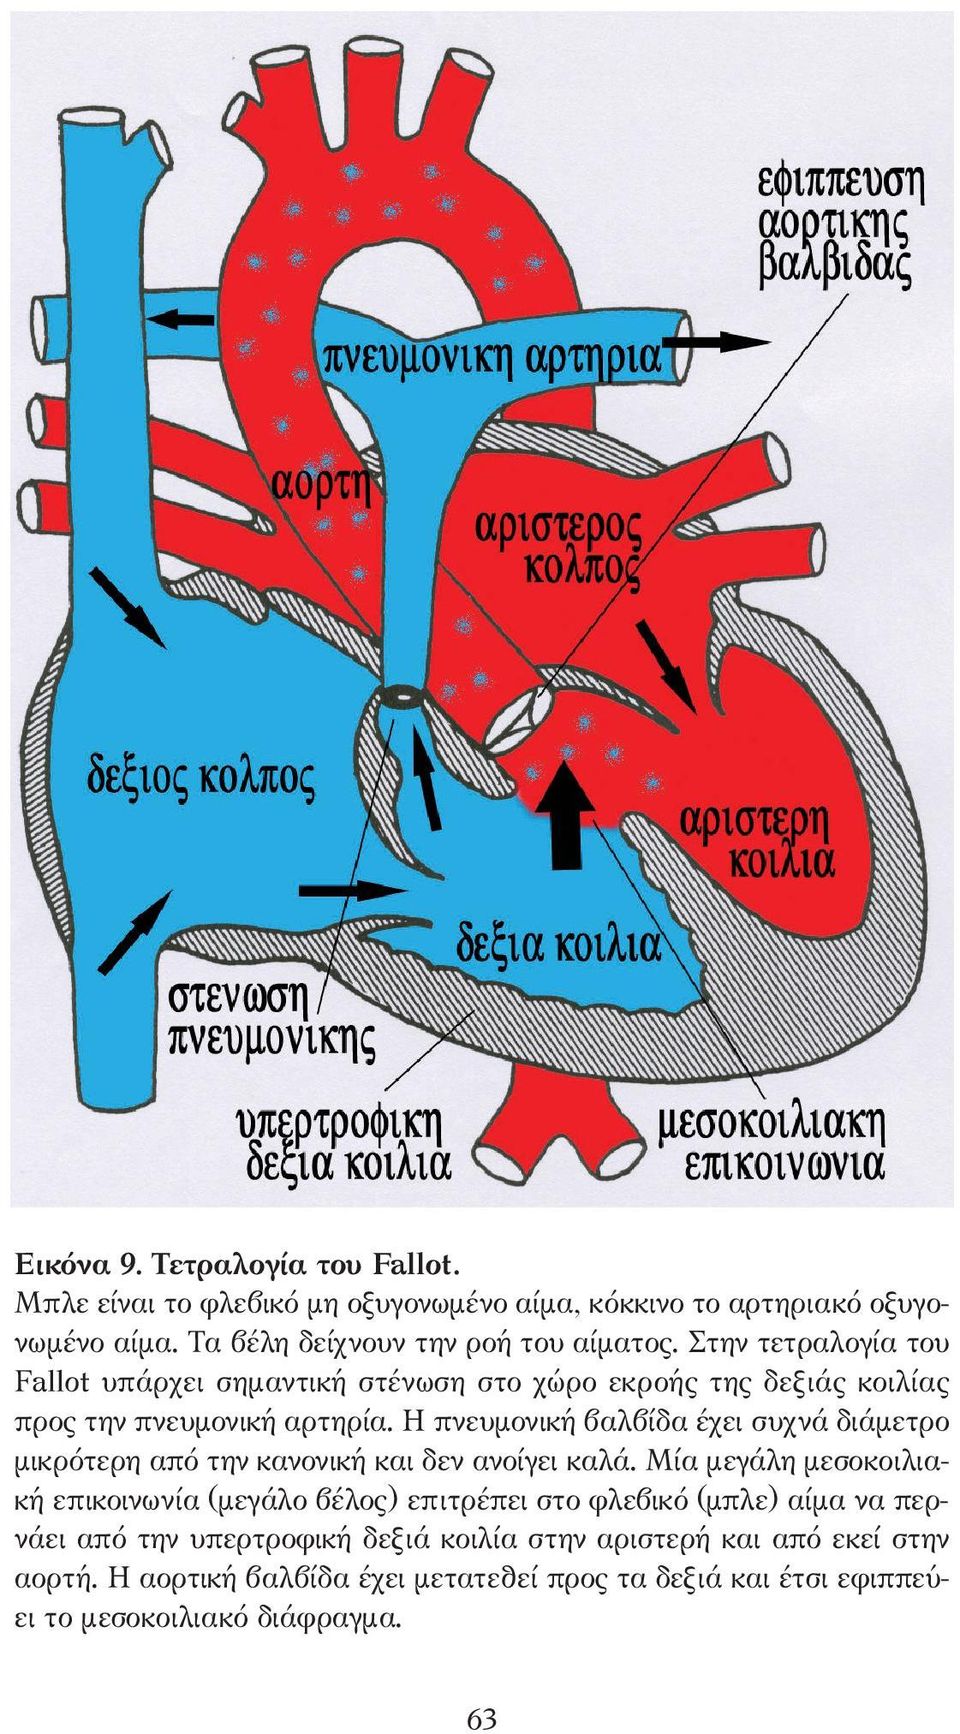 Η πνευµονική βαλβίδα έχει συχνά διάµετρο µικρότερη από την κανονική και δεν ανοίγει καλά.